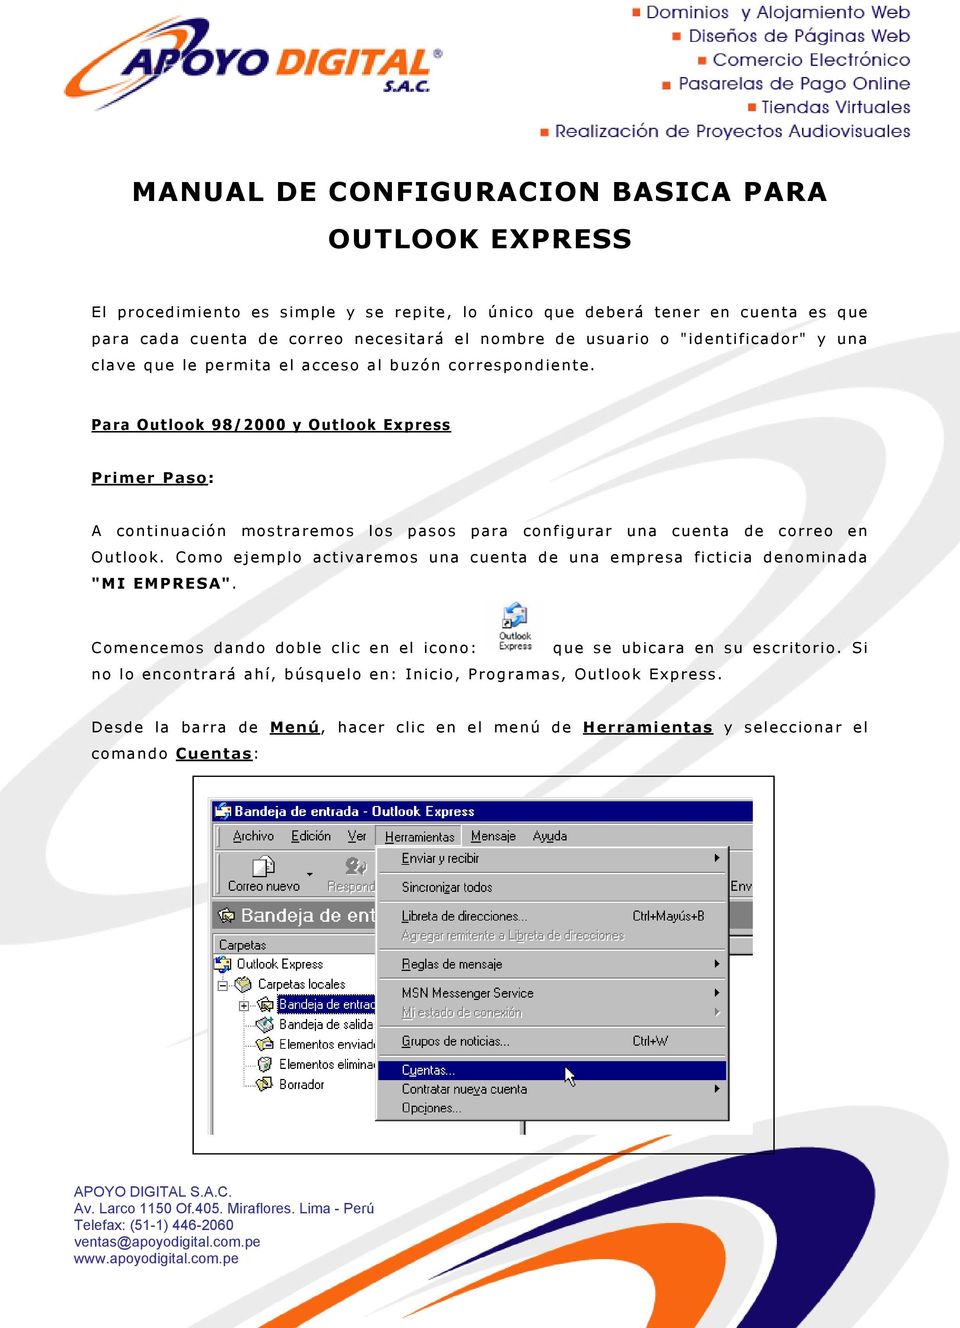 Para Outlook 98/2000 y Outlook Express Primer Paso: A continuación mostraremos los pasos para configurar una cuenta de correo en Outlook.